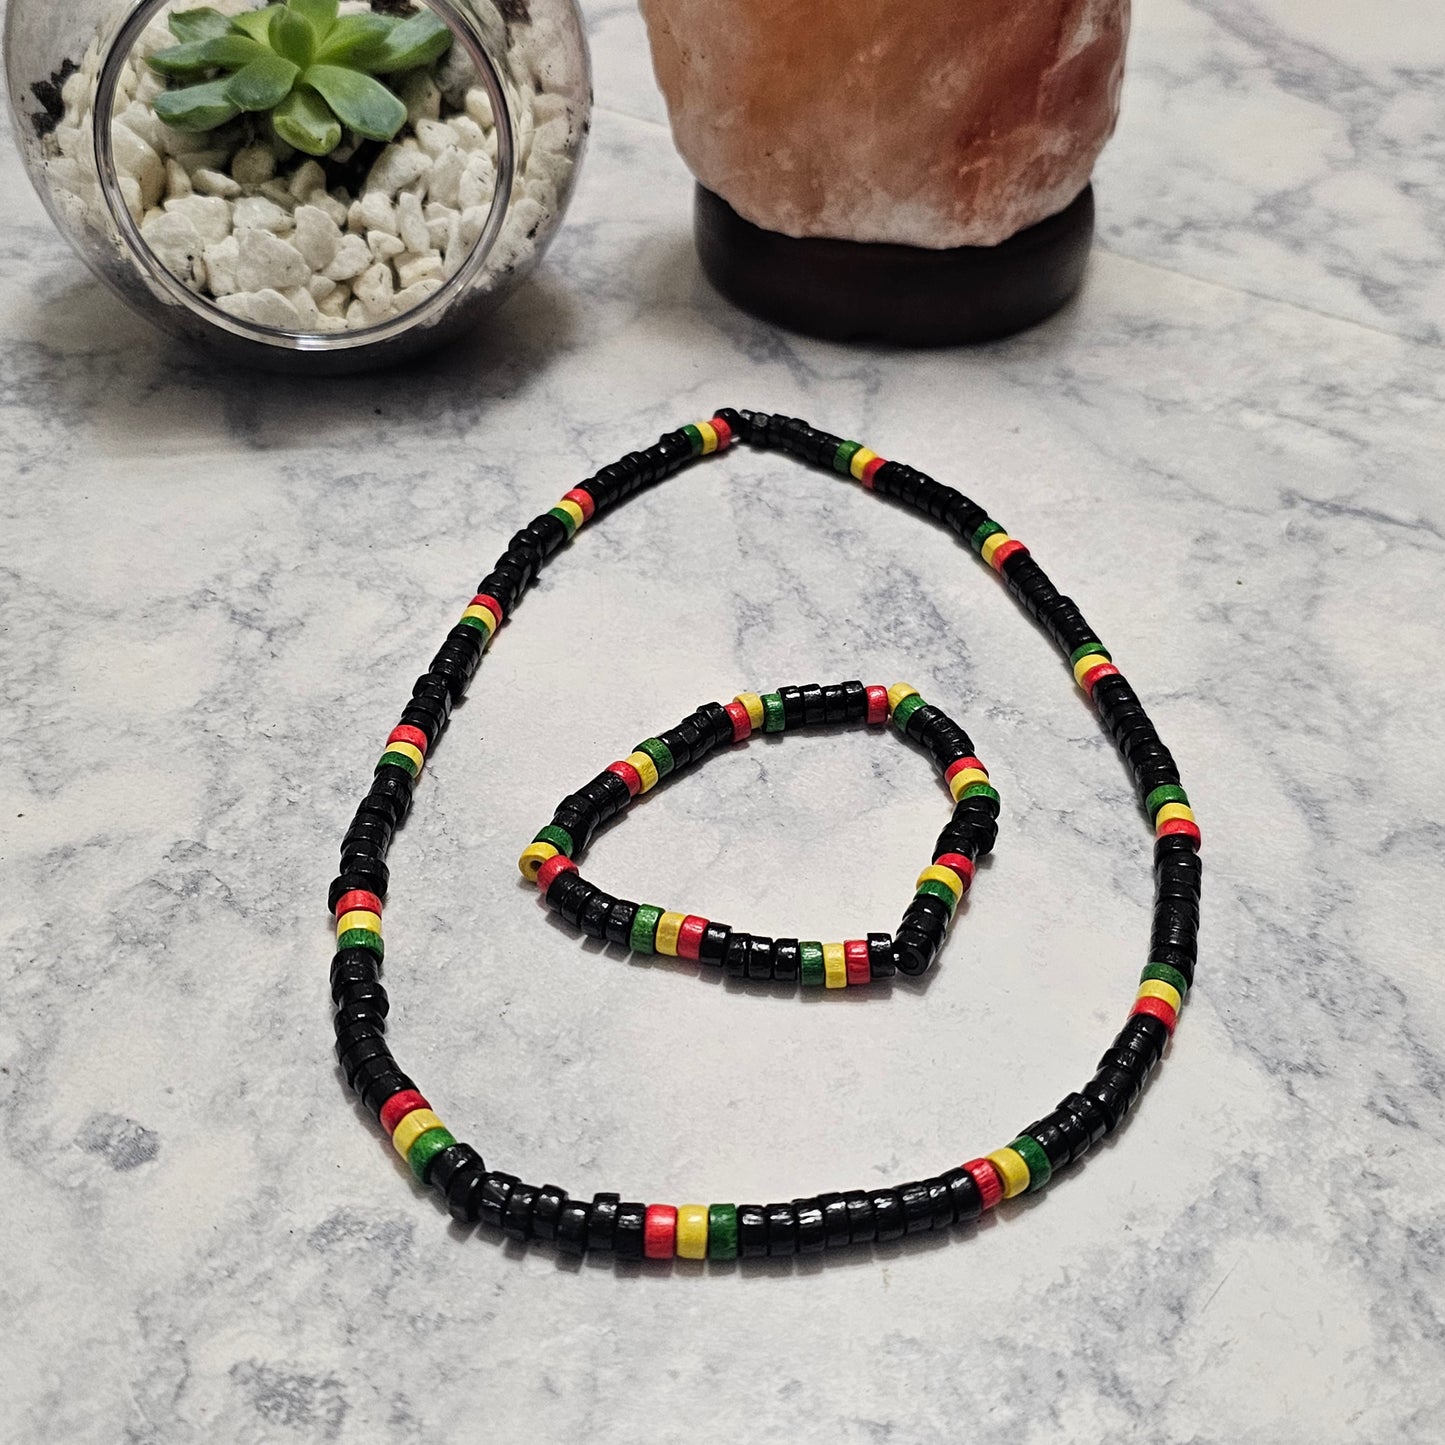 Rasta Necklace and Bracelet set